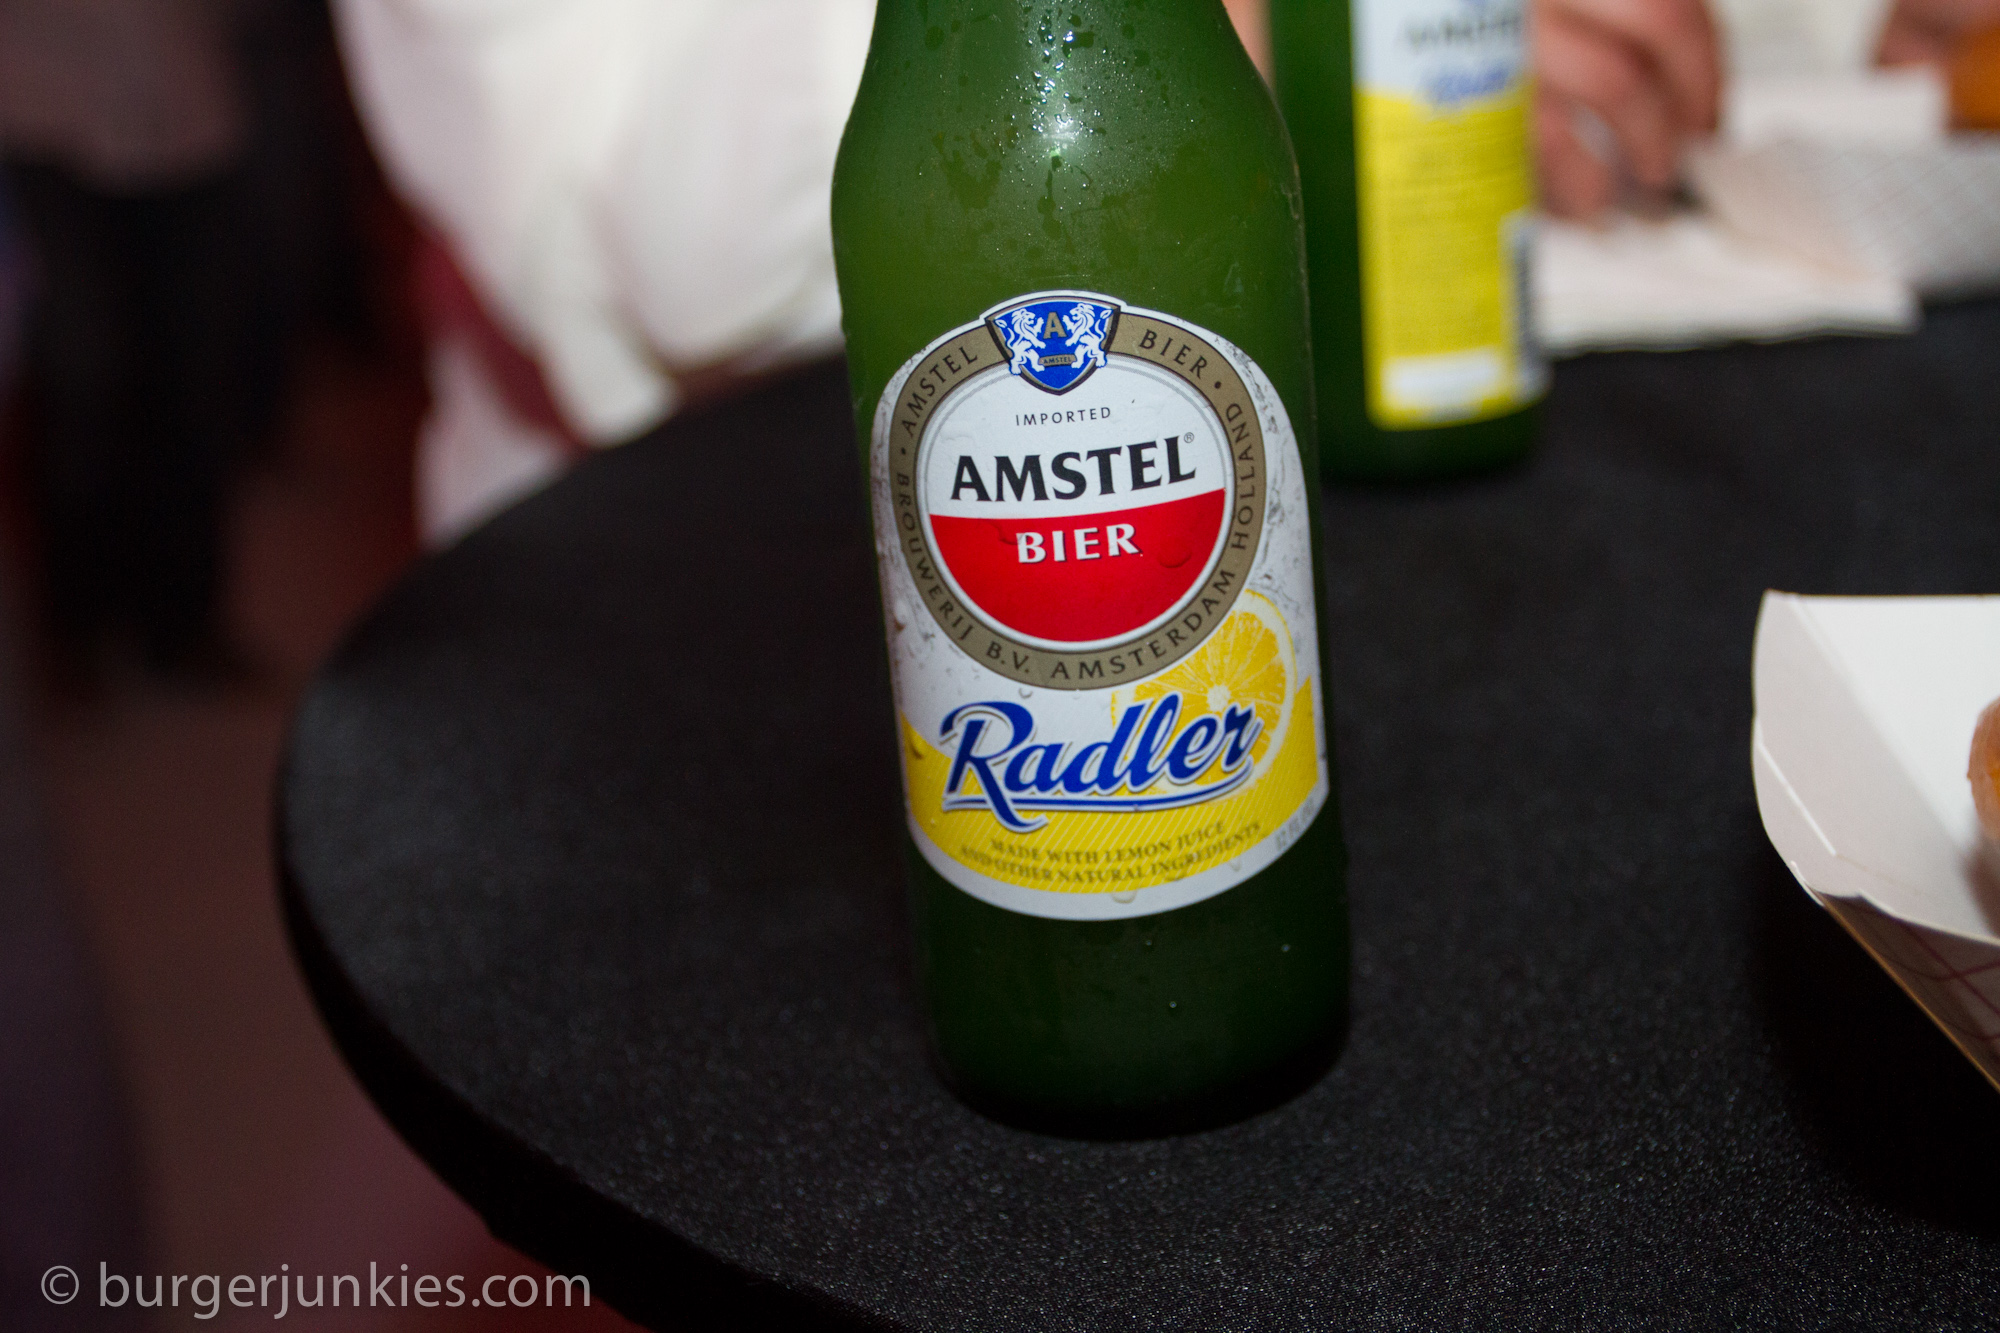 Amstel Light Radler